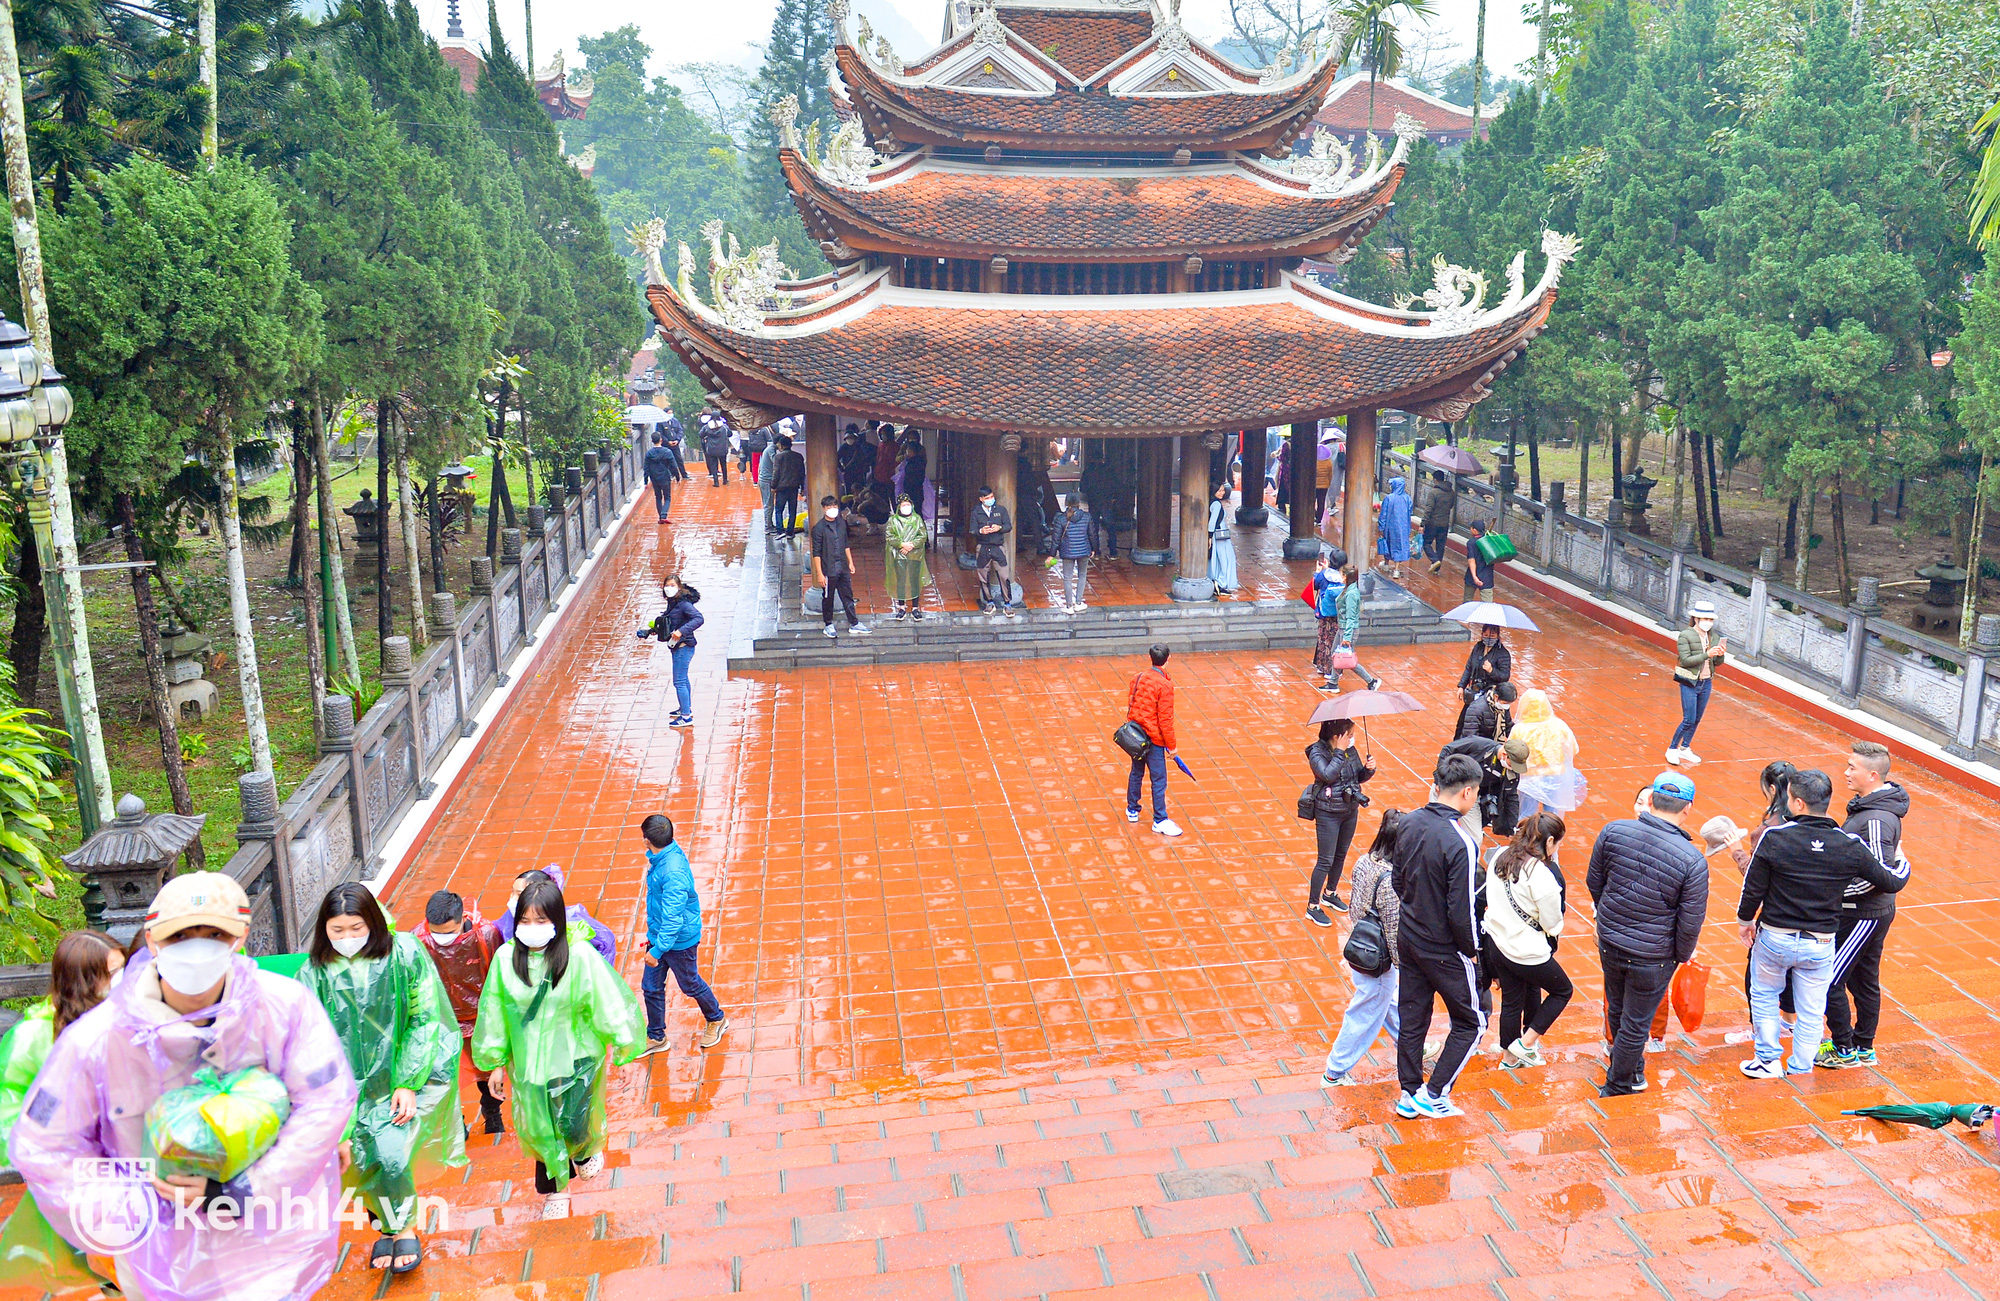 Ảnh: Người dân mặc áo mưa co rúm trên thuyền, trẻ em mệt mỏi theo cha mẹ đi lễ chùa Hương trong giá rét - Ảnh 11.